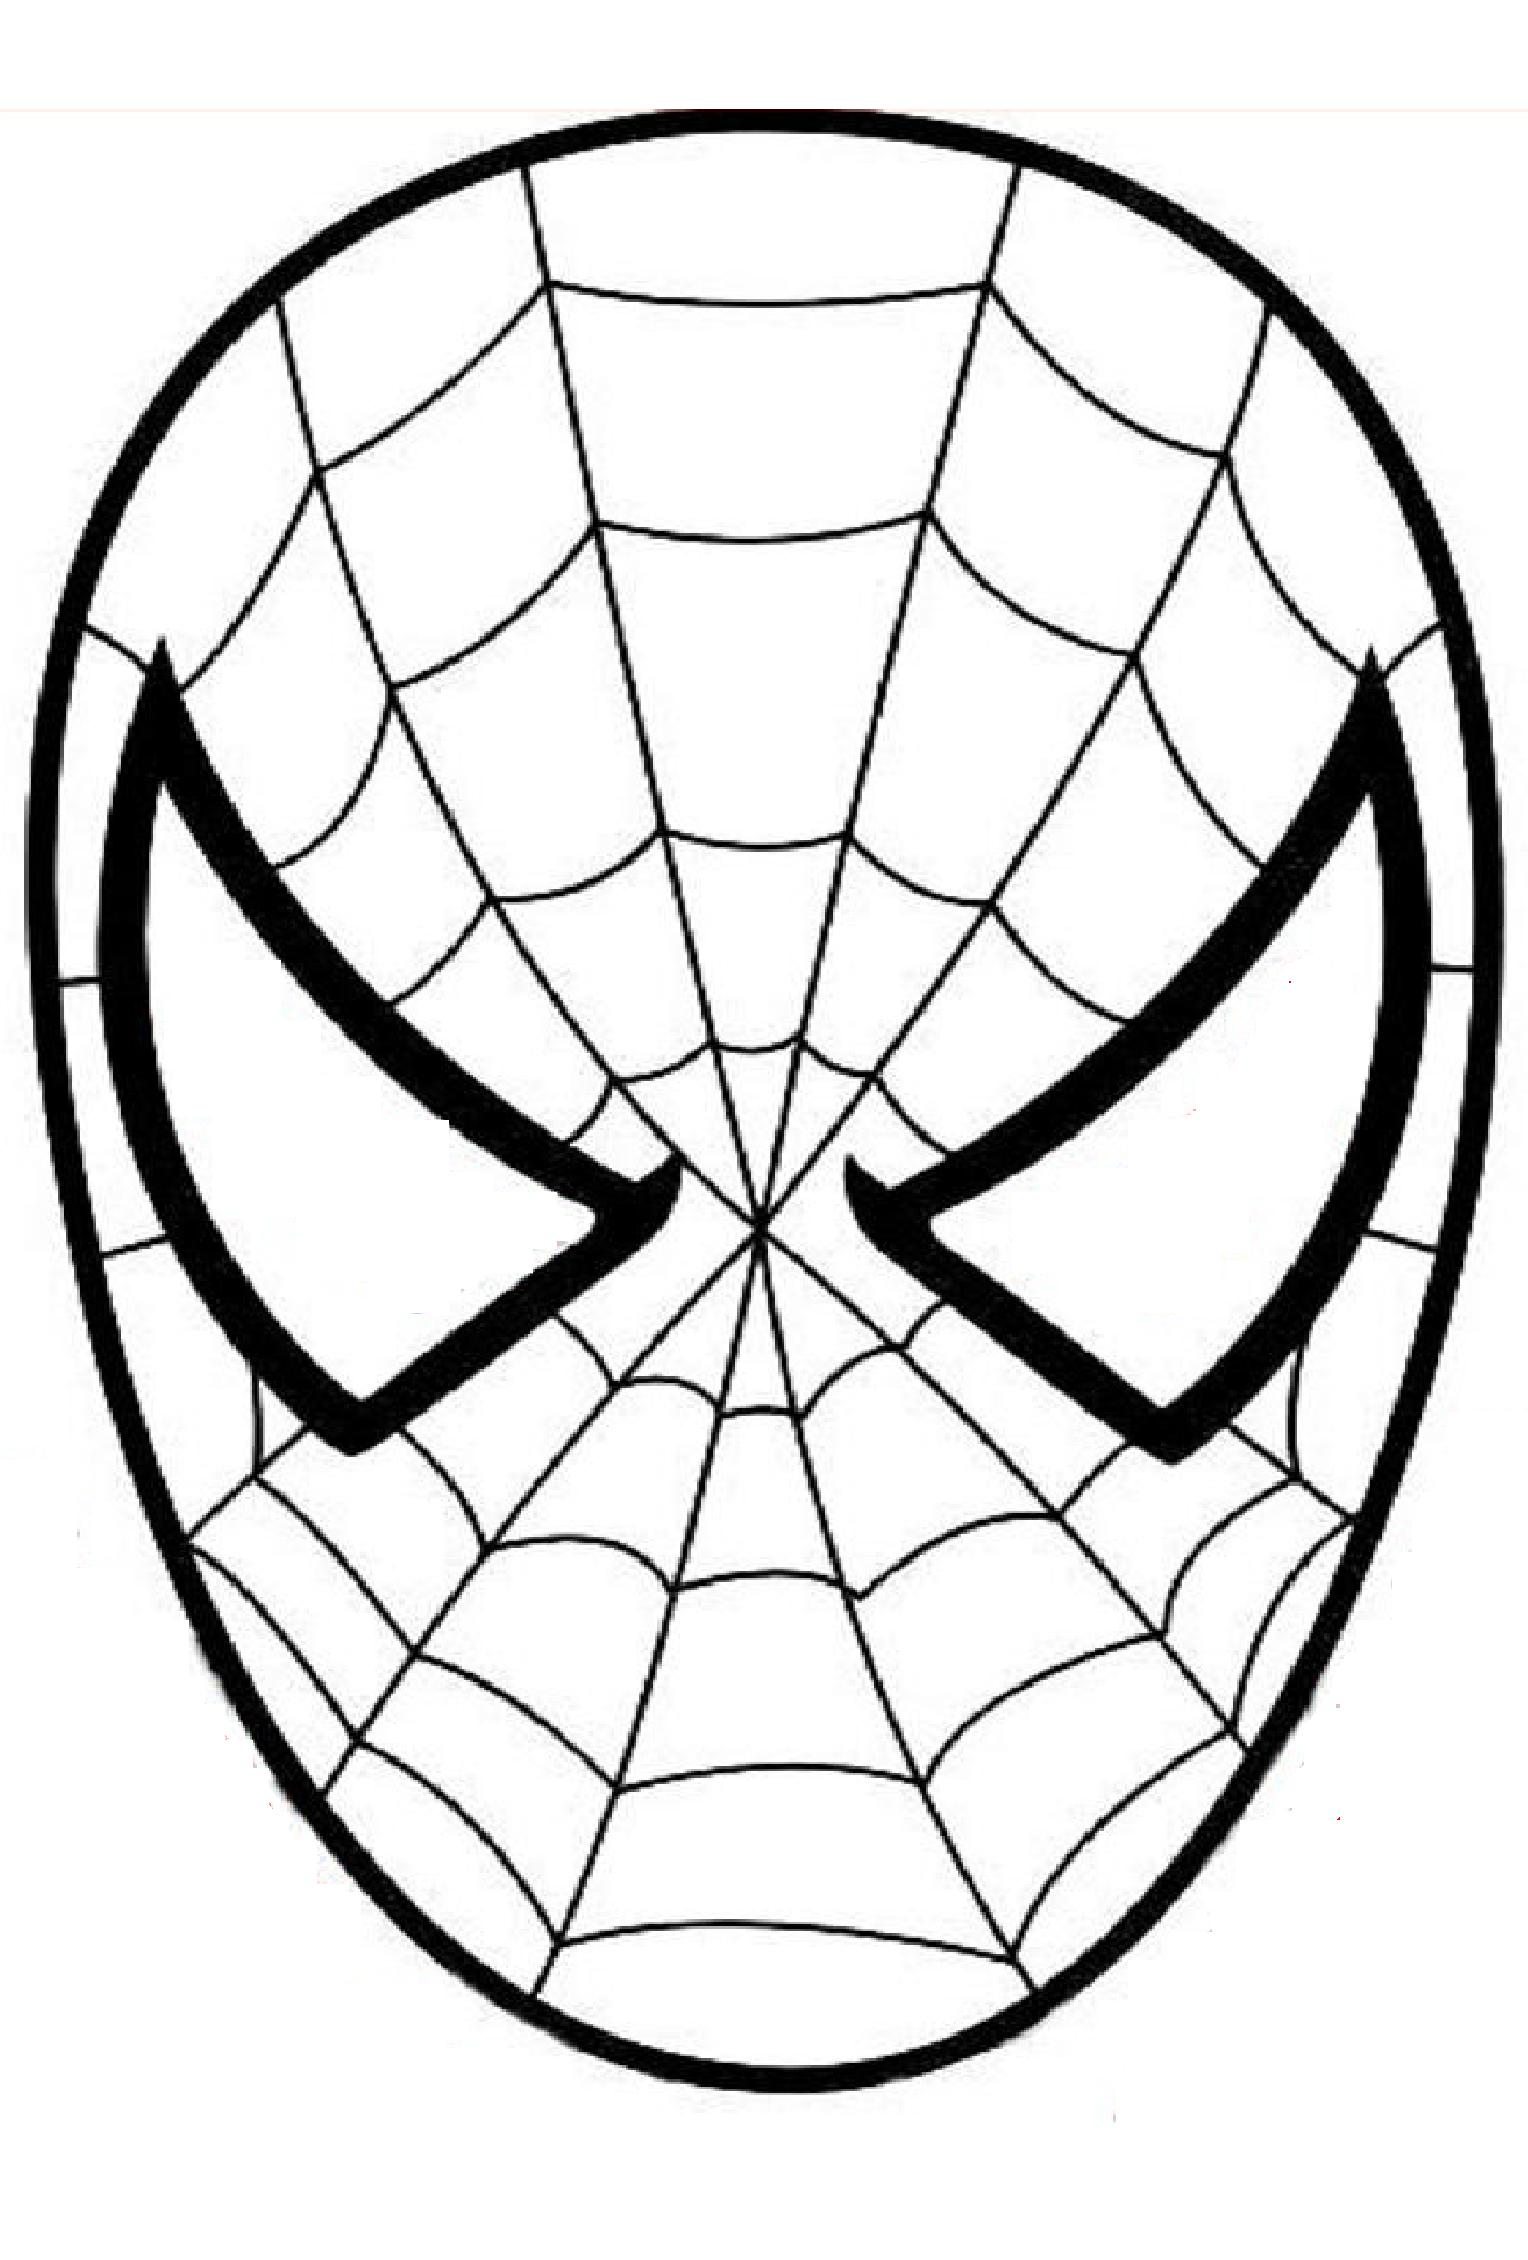 Un masque de Spiderman à imprimer, décorer et colorier